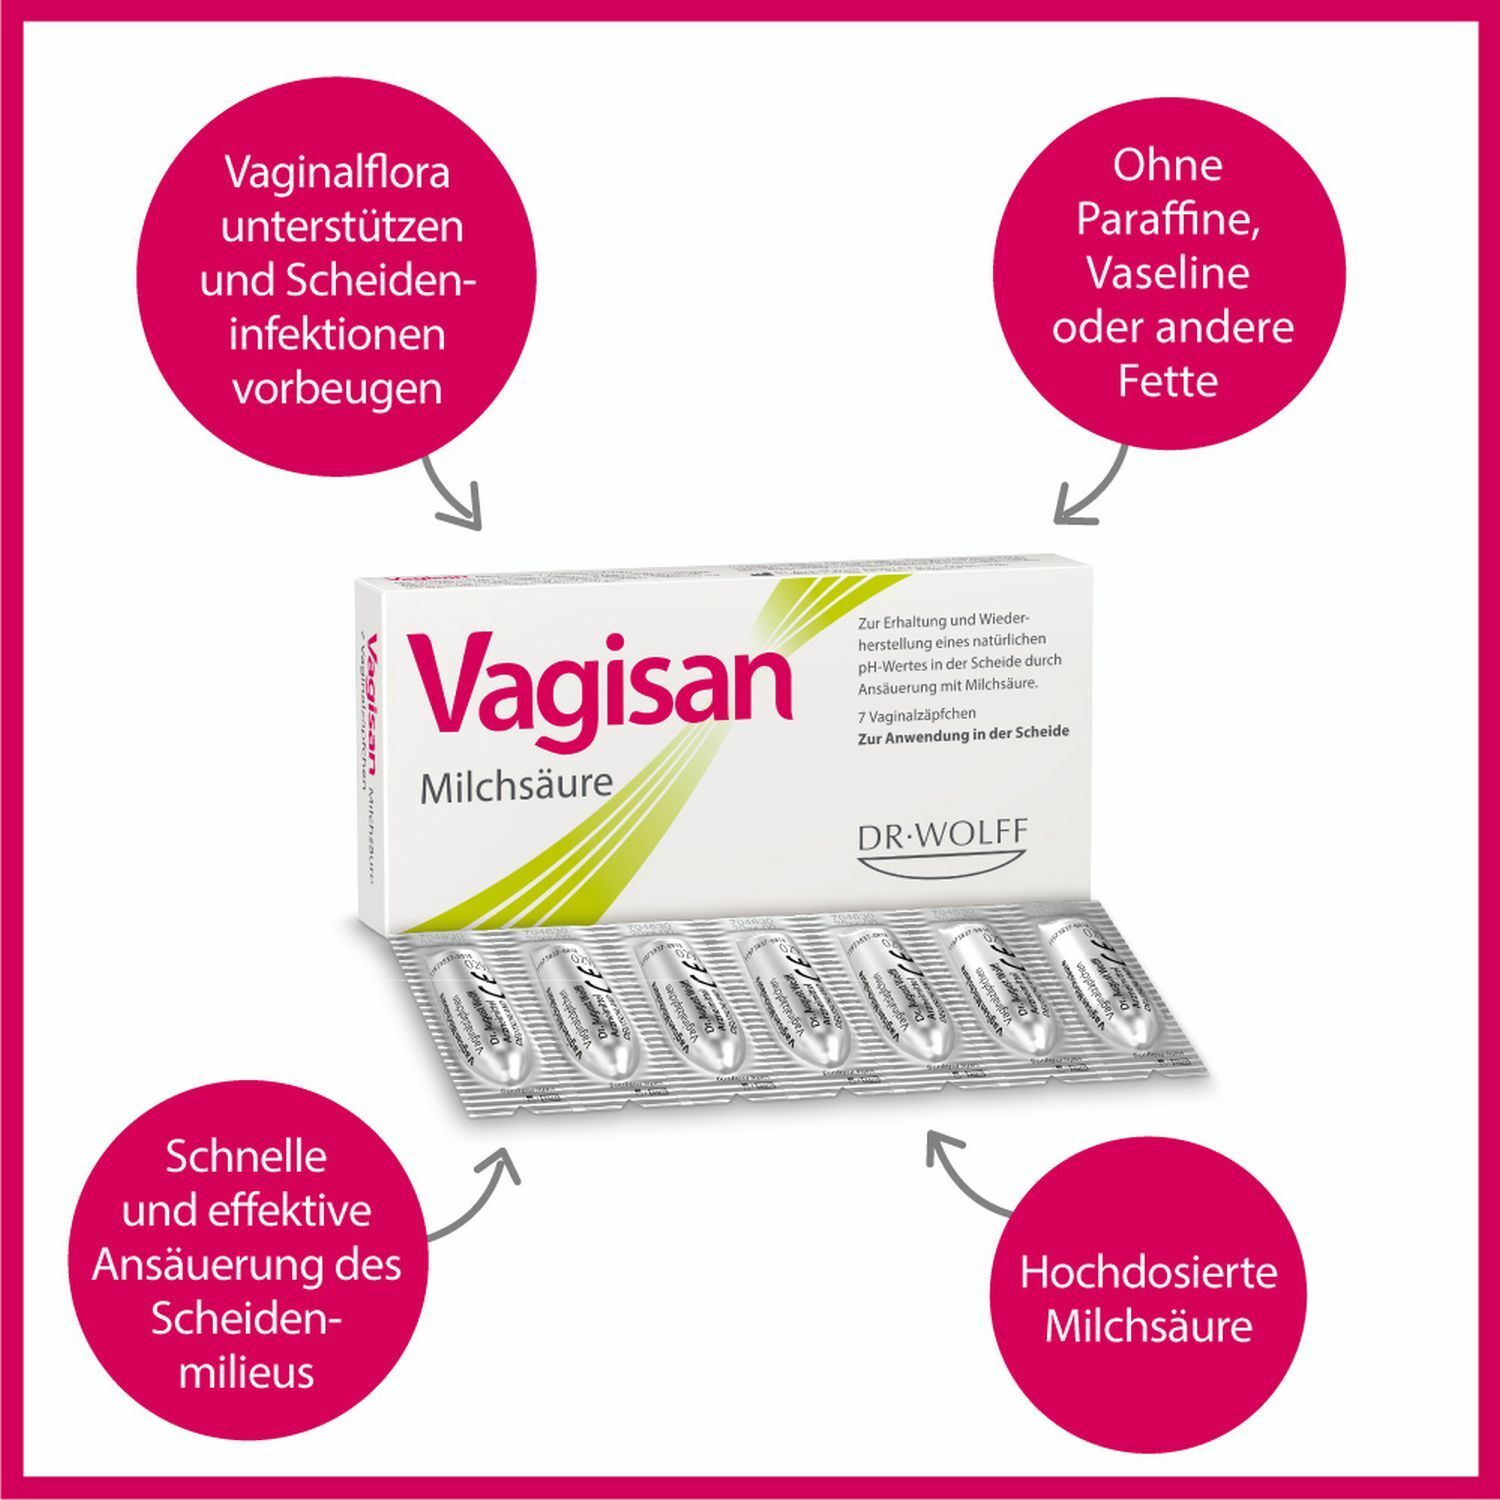 Vagisan Milchsäure: Zäpfchen zur Stabilisierung des natürlichen vaginalen pH-Werts